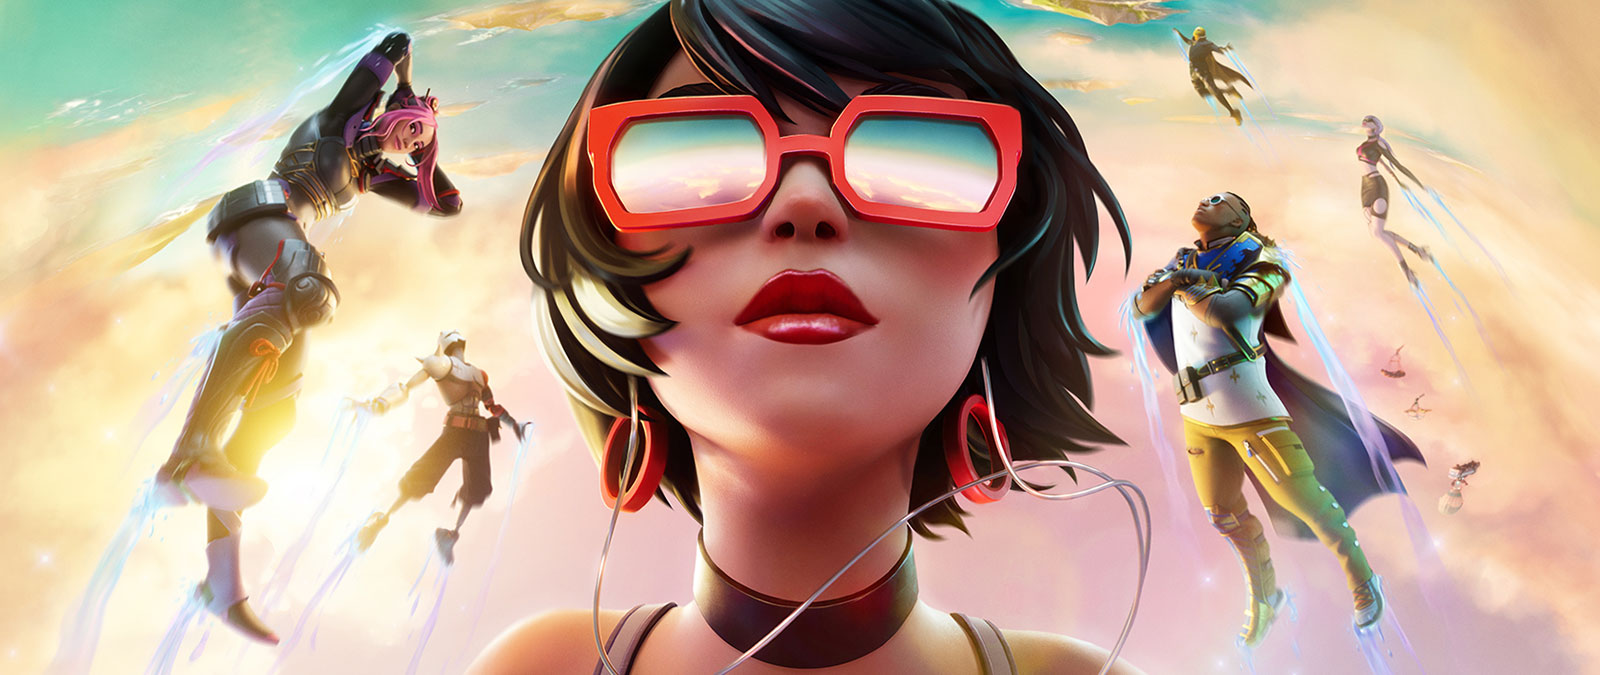 Una chica con gafas de sol rojas flota en las nubes con otros personajes contra un cielo de color pastel.